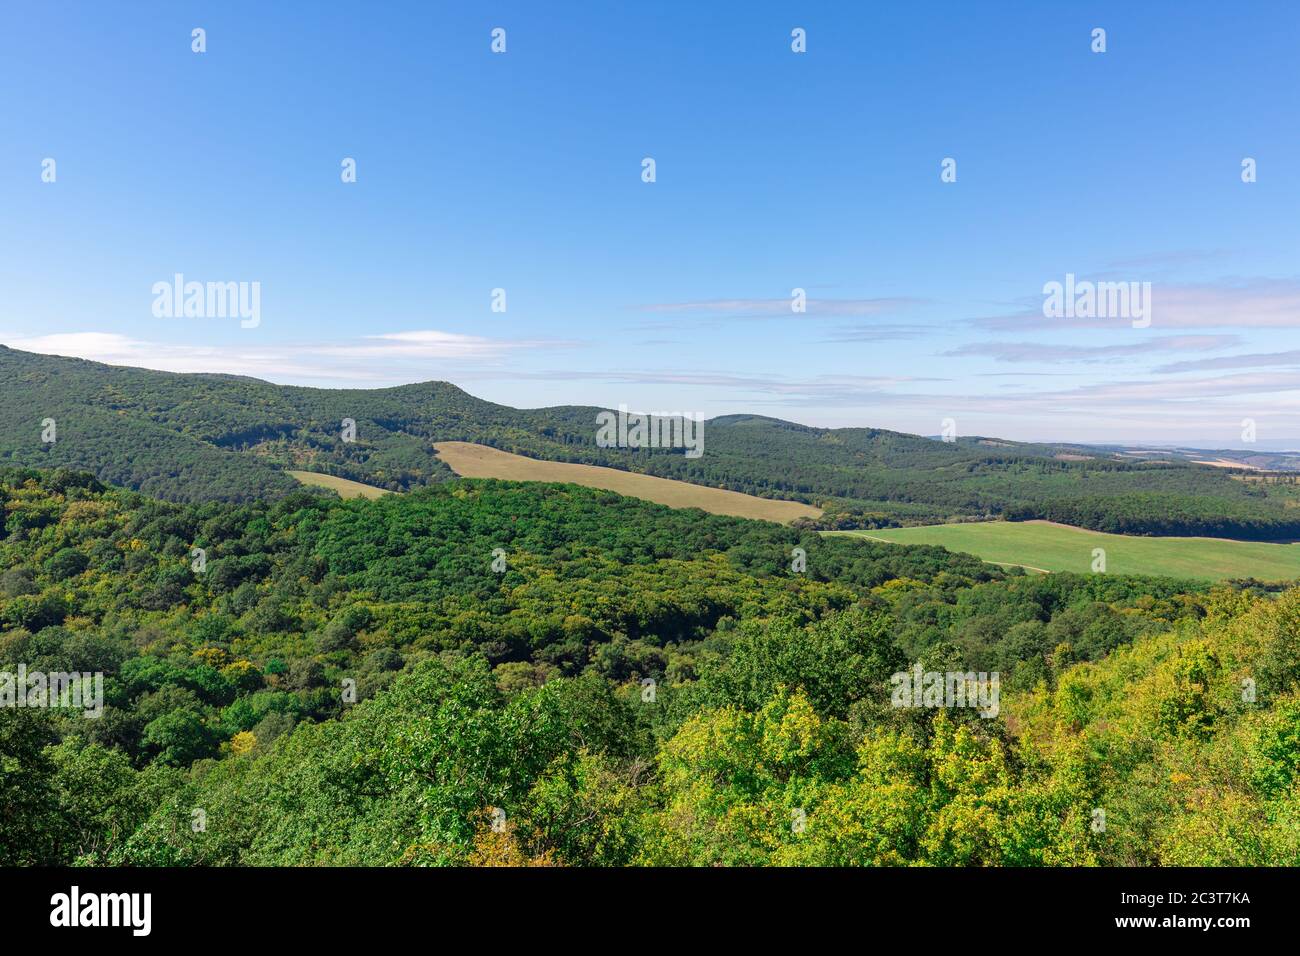 Paysage de colline avec forêt verte et champs de prairie sous ciel bleu, jour d'été ensoleillé. Scène de l'environnement de la nature, paysage horizontal Banque D'Images